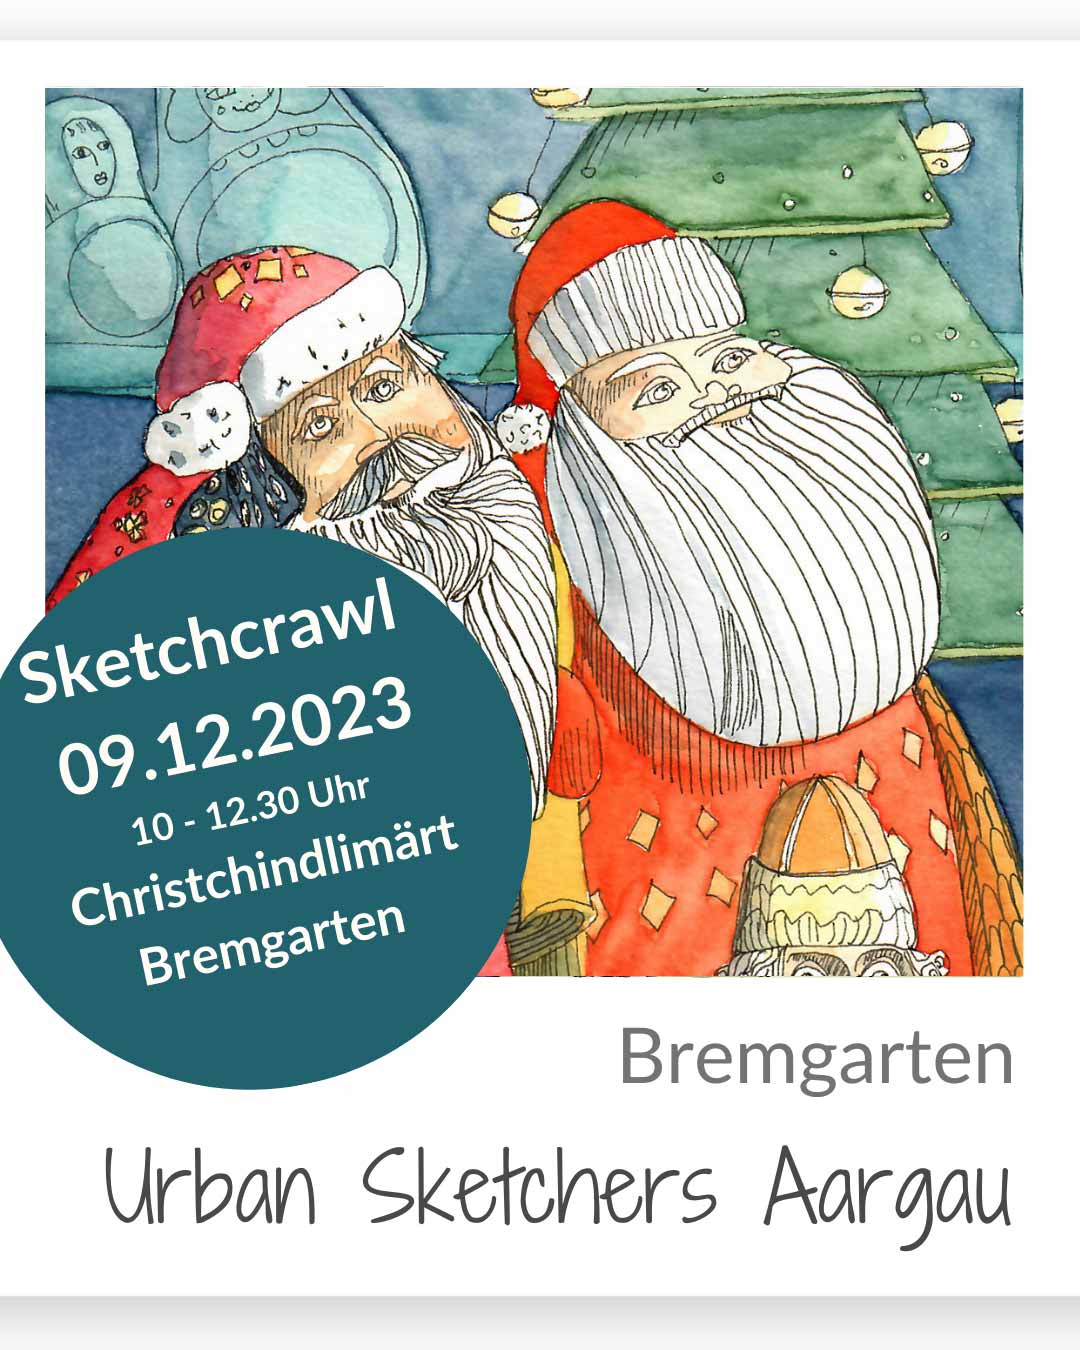 Aargauer  urban sketchers, christchindlimärt Bremgarten